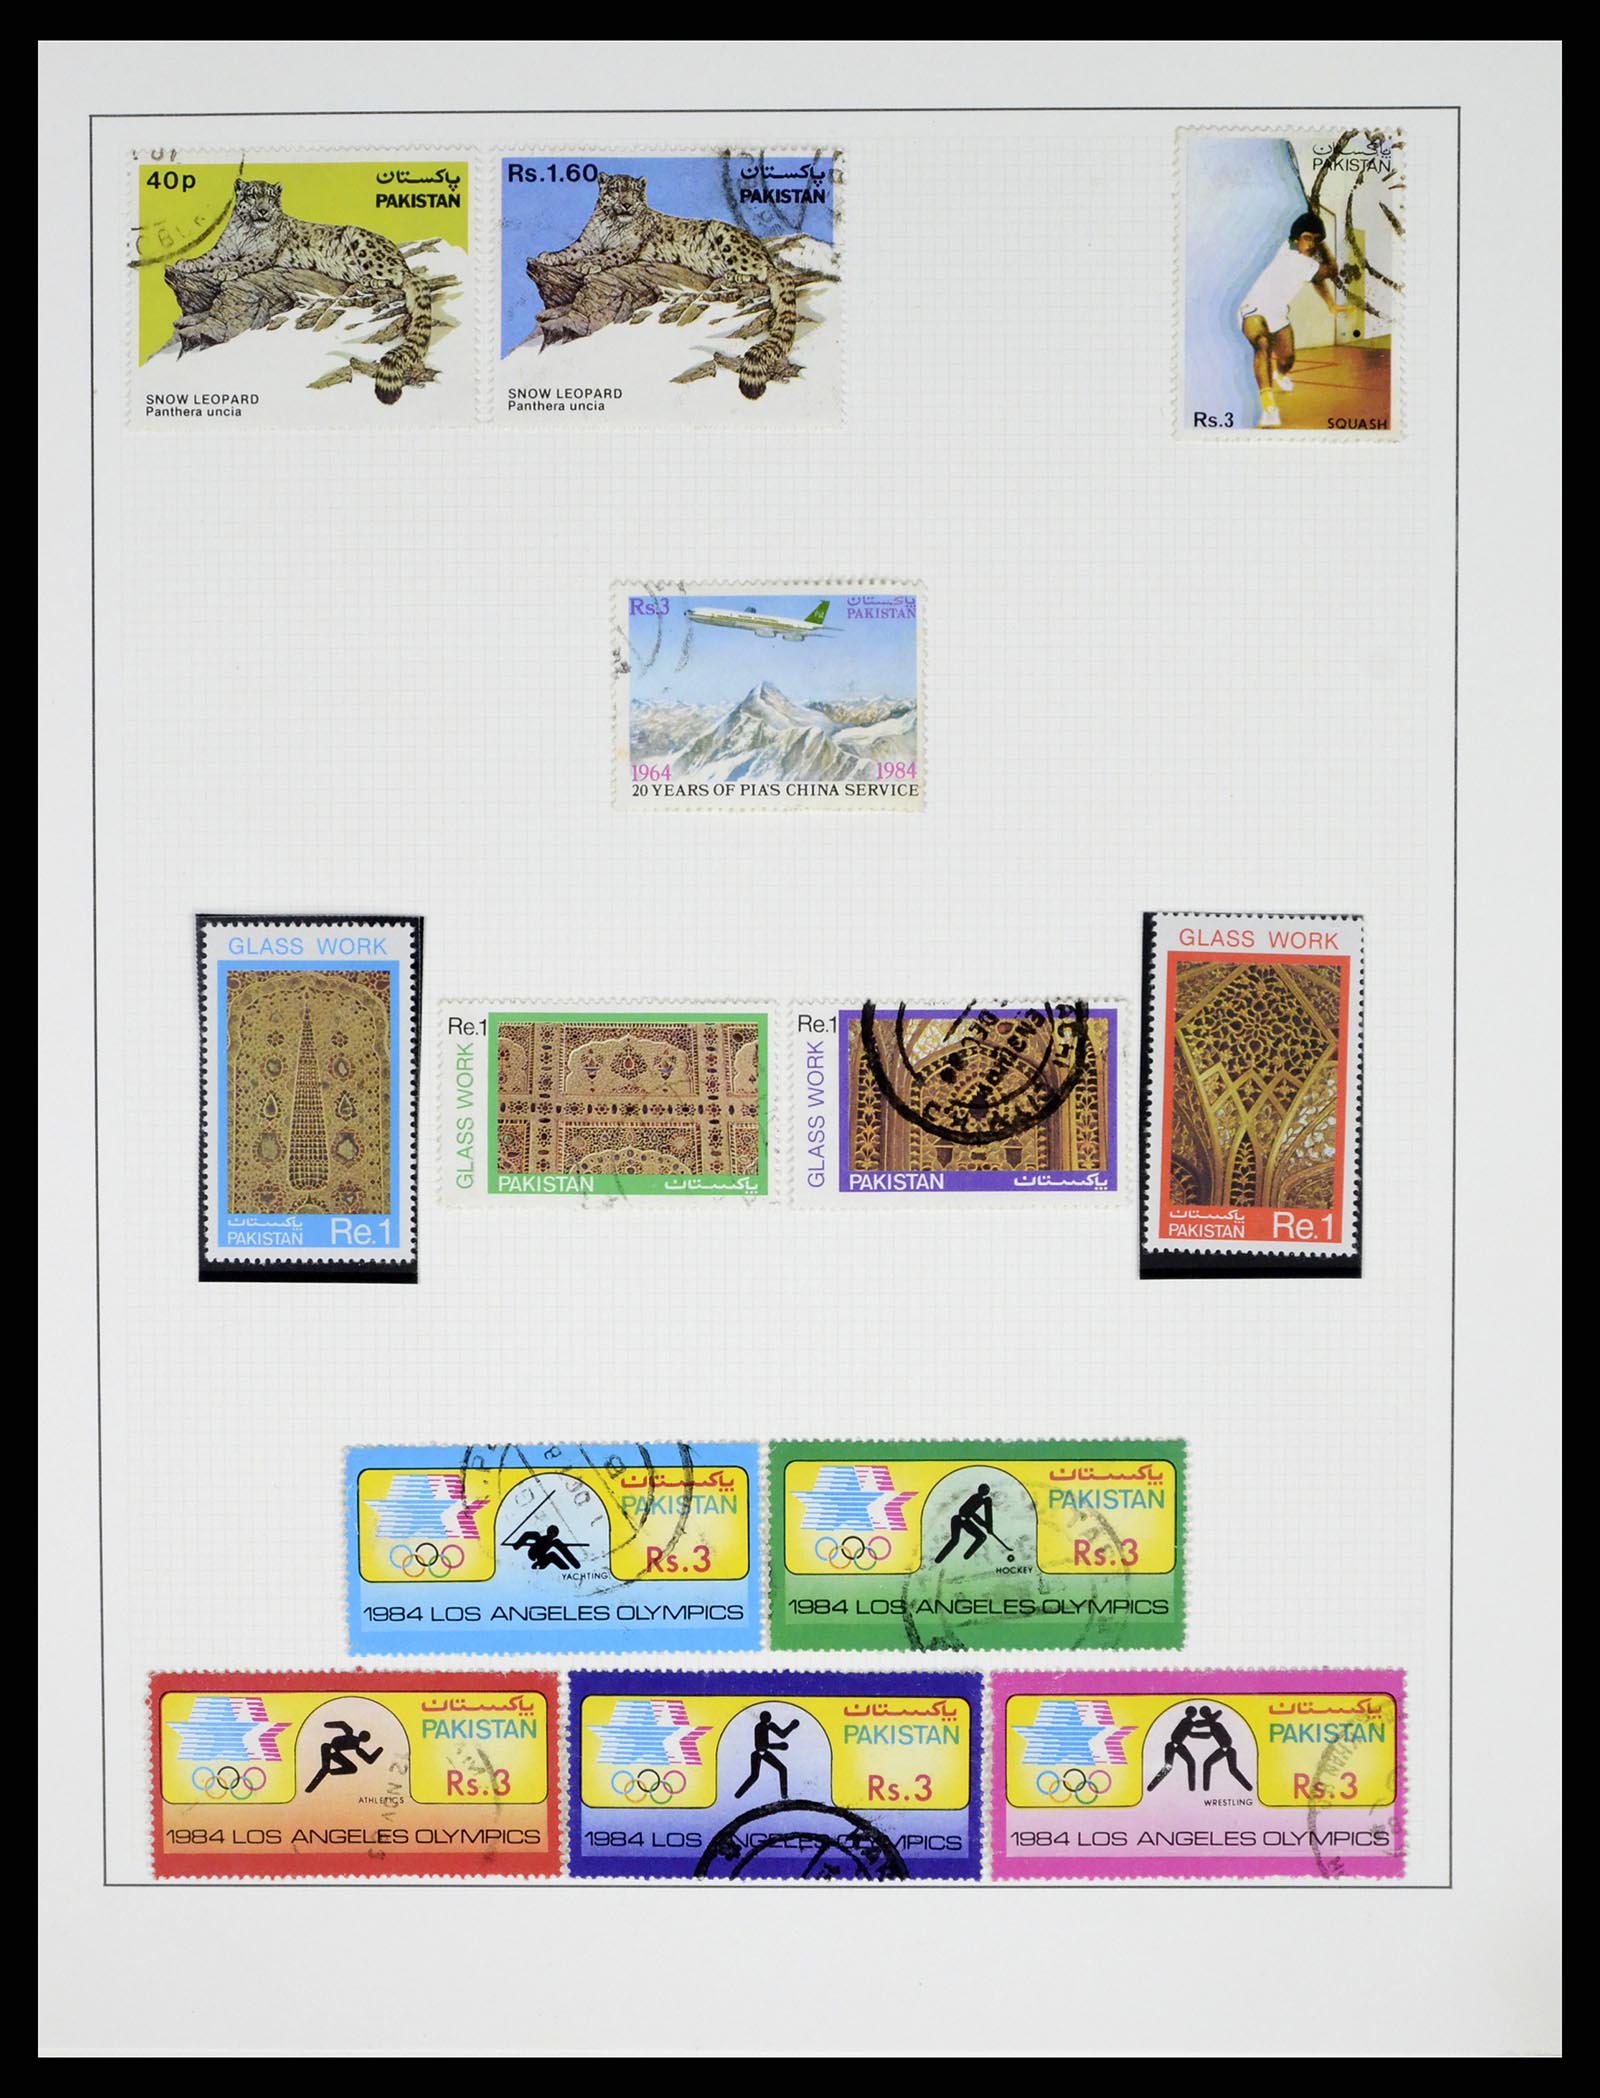 37619 058 - Stamp collection 37619 Pakistan/Bangladesh 1947-2000.